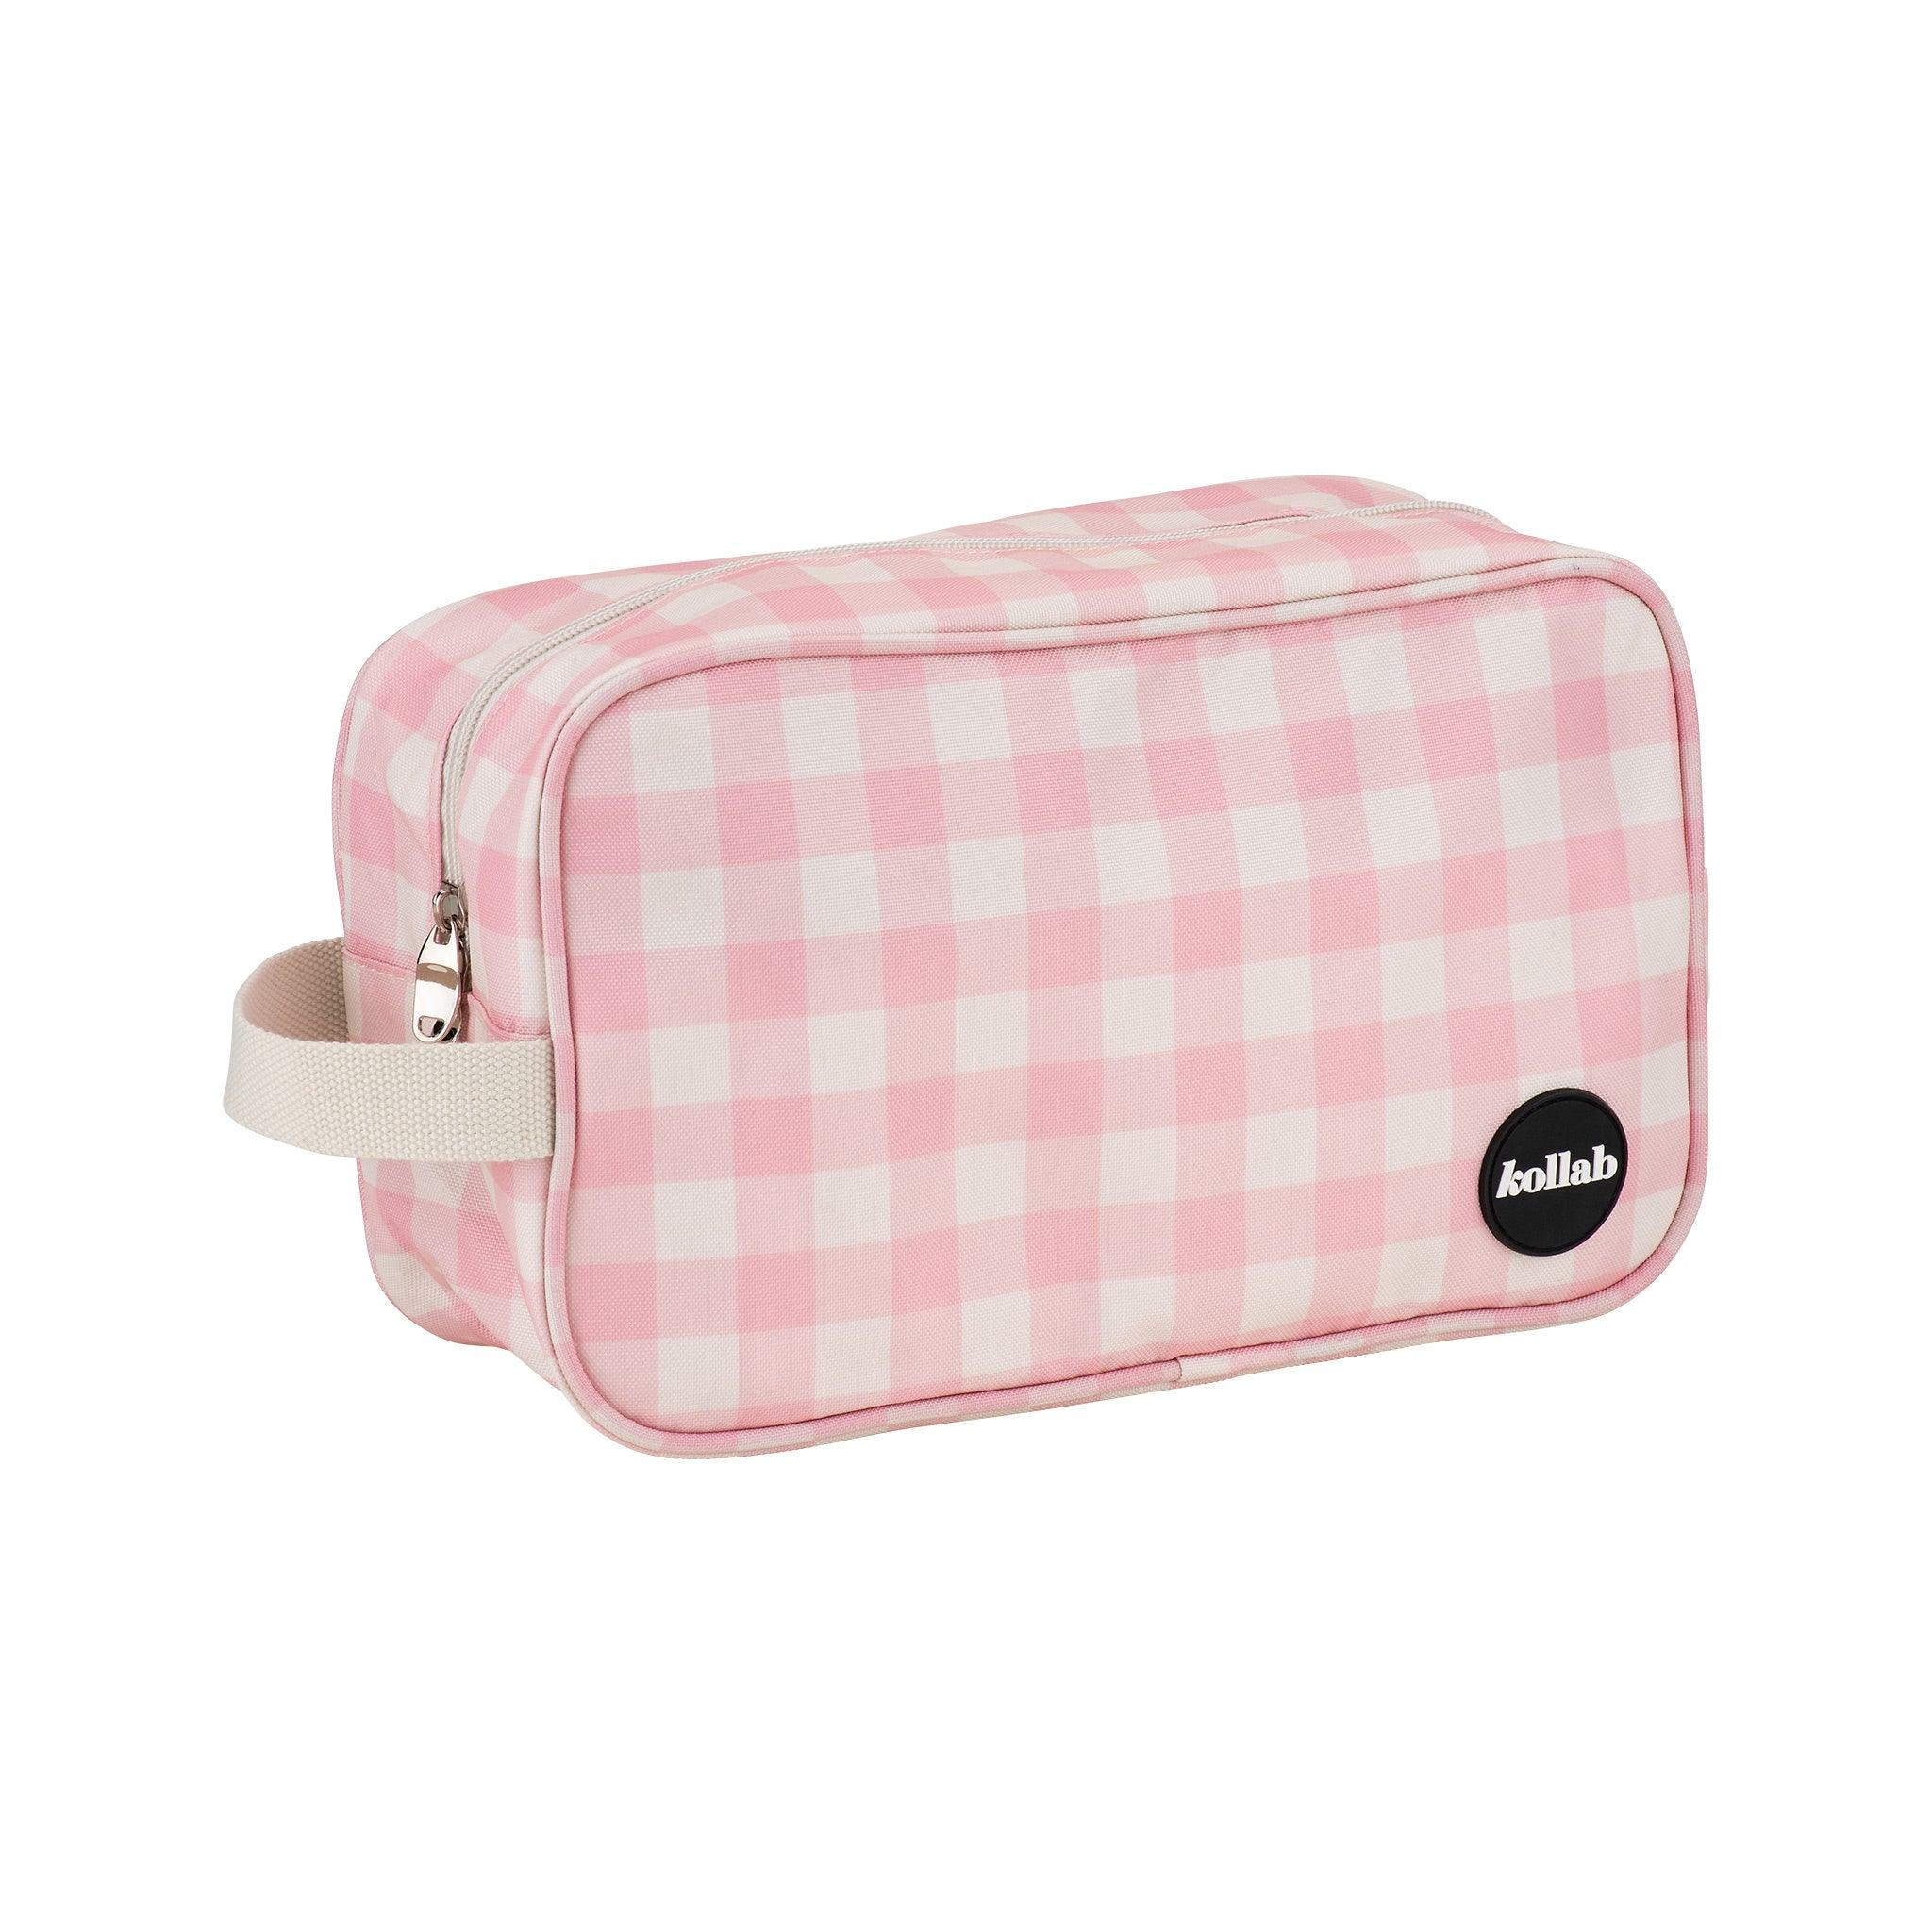 Kollab Holiday Travel Bag Candy Pink Check – Handbags from BJs Furniture Horsham